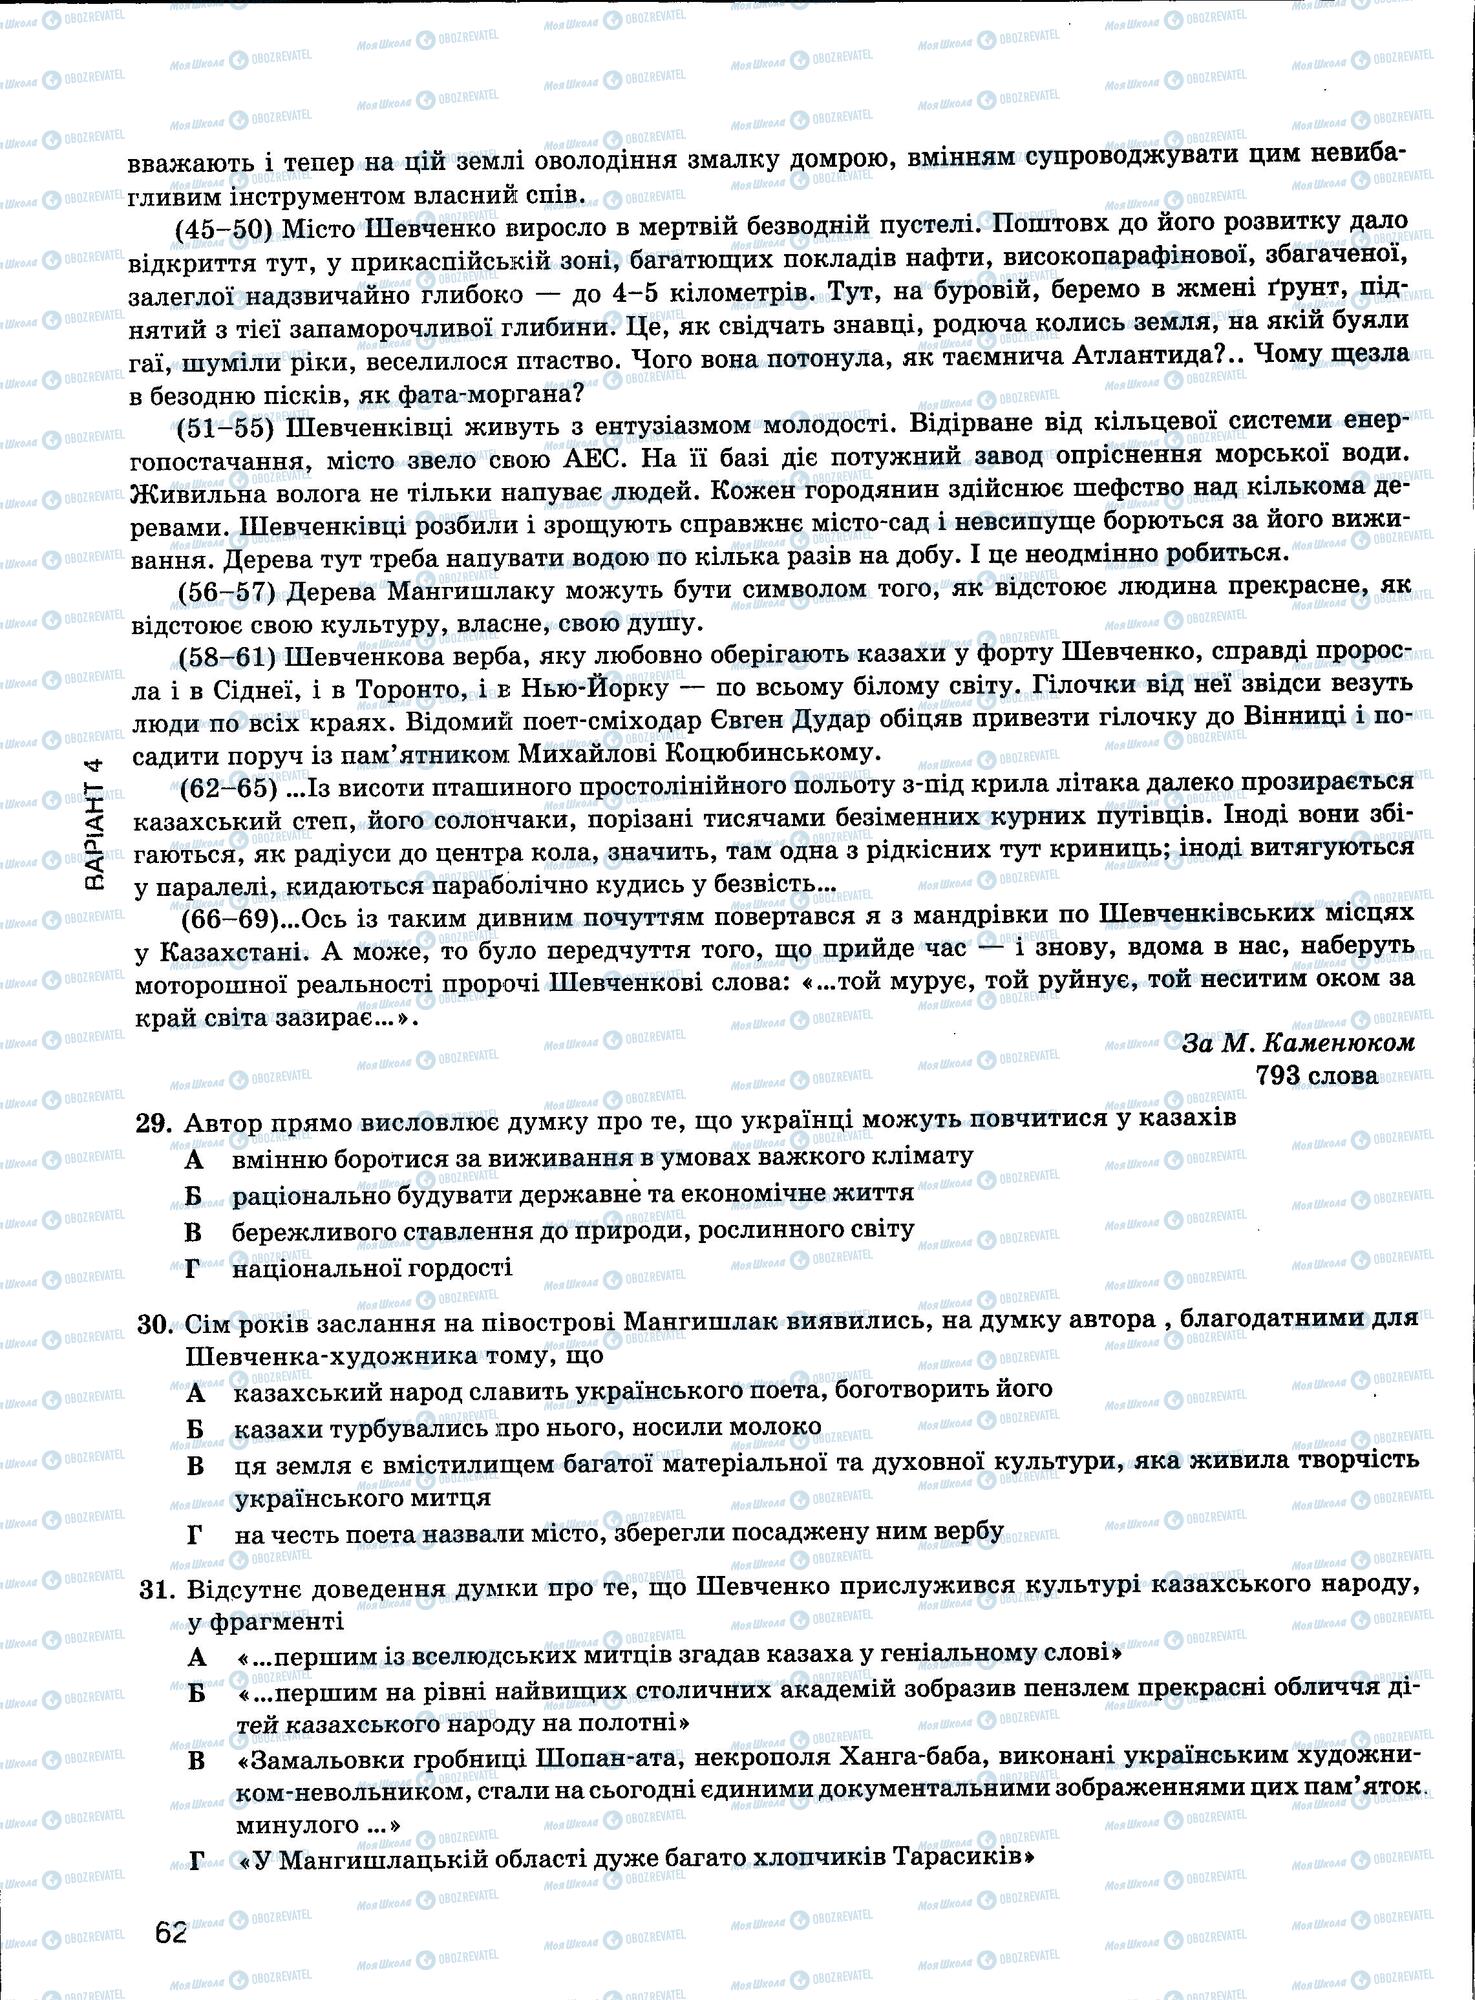 ЗНО Укр мова 11 класс страница 62